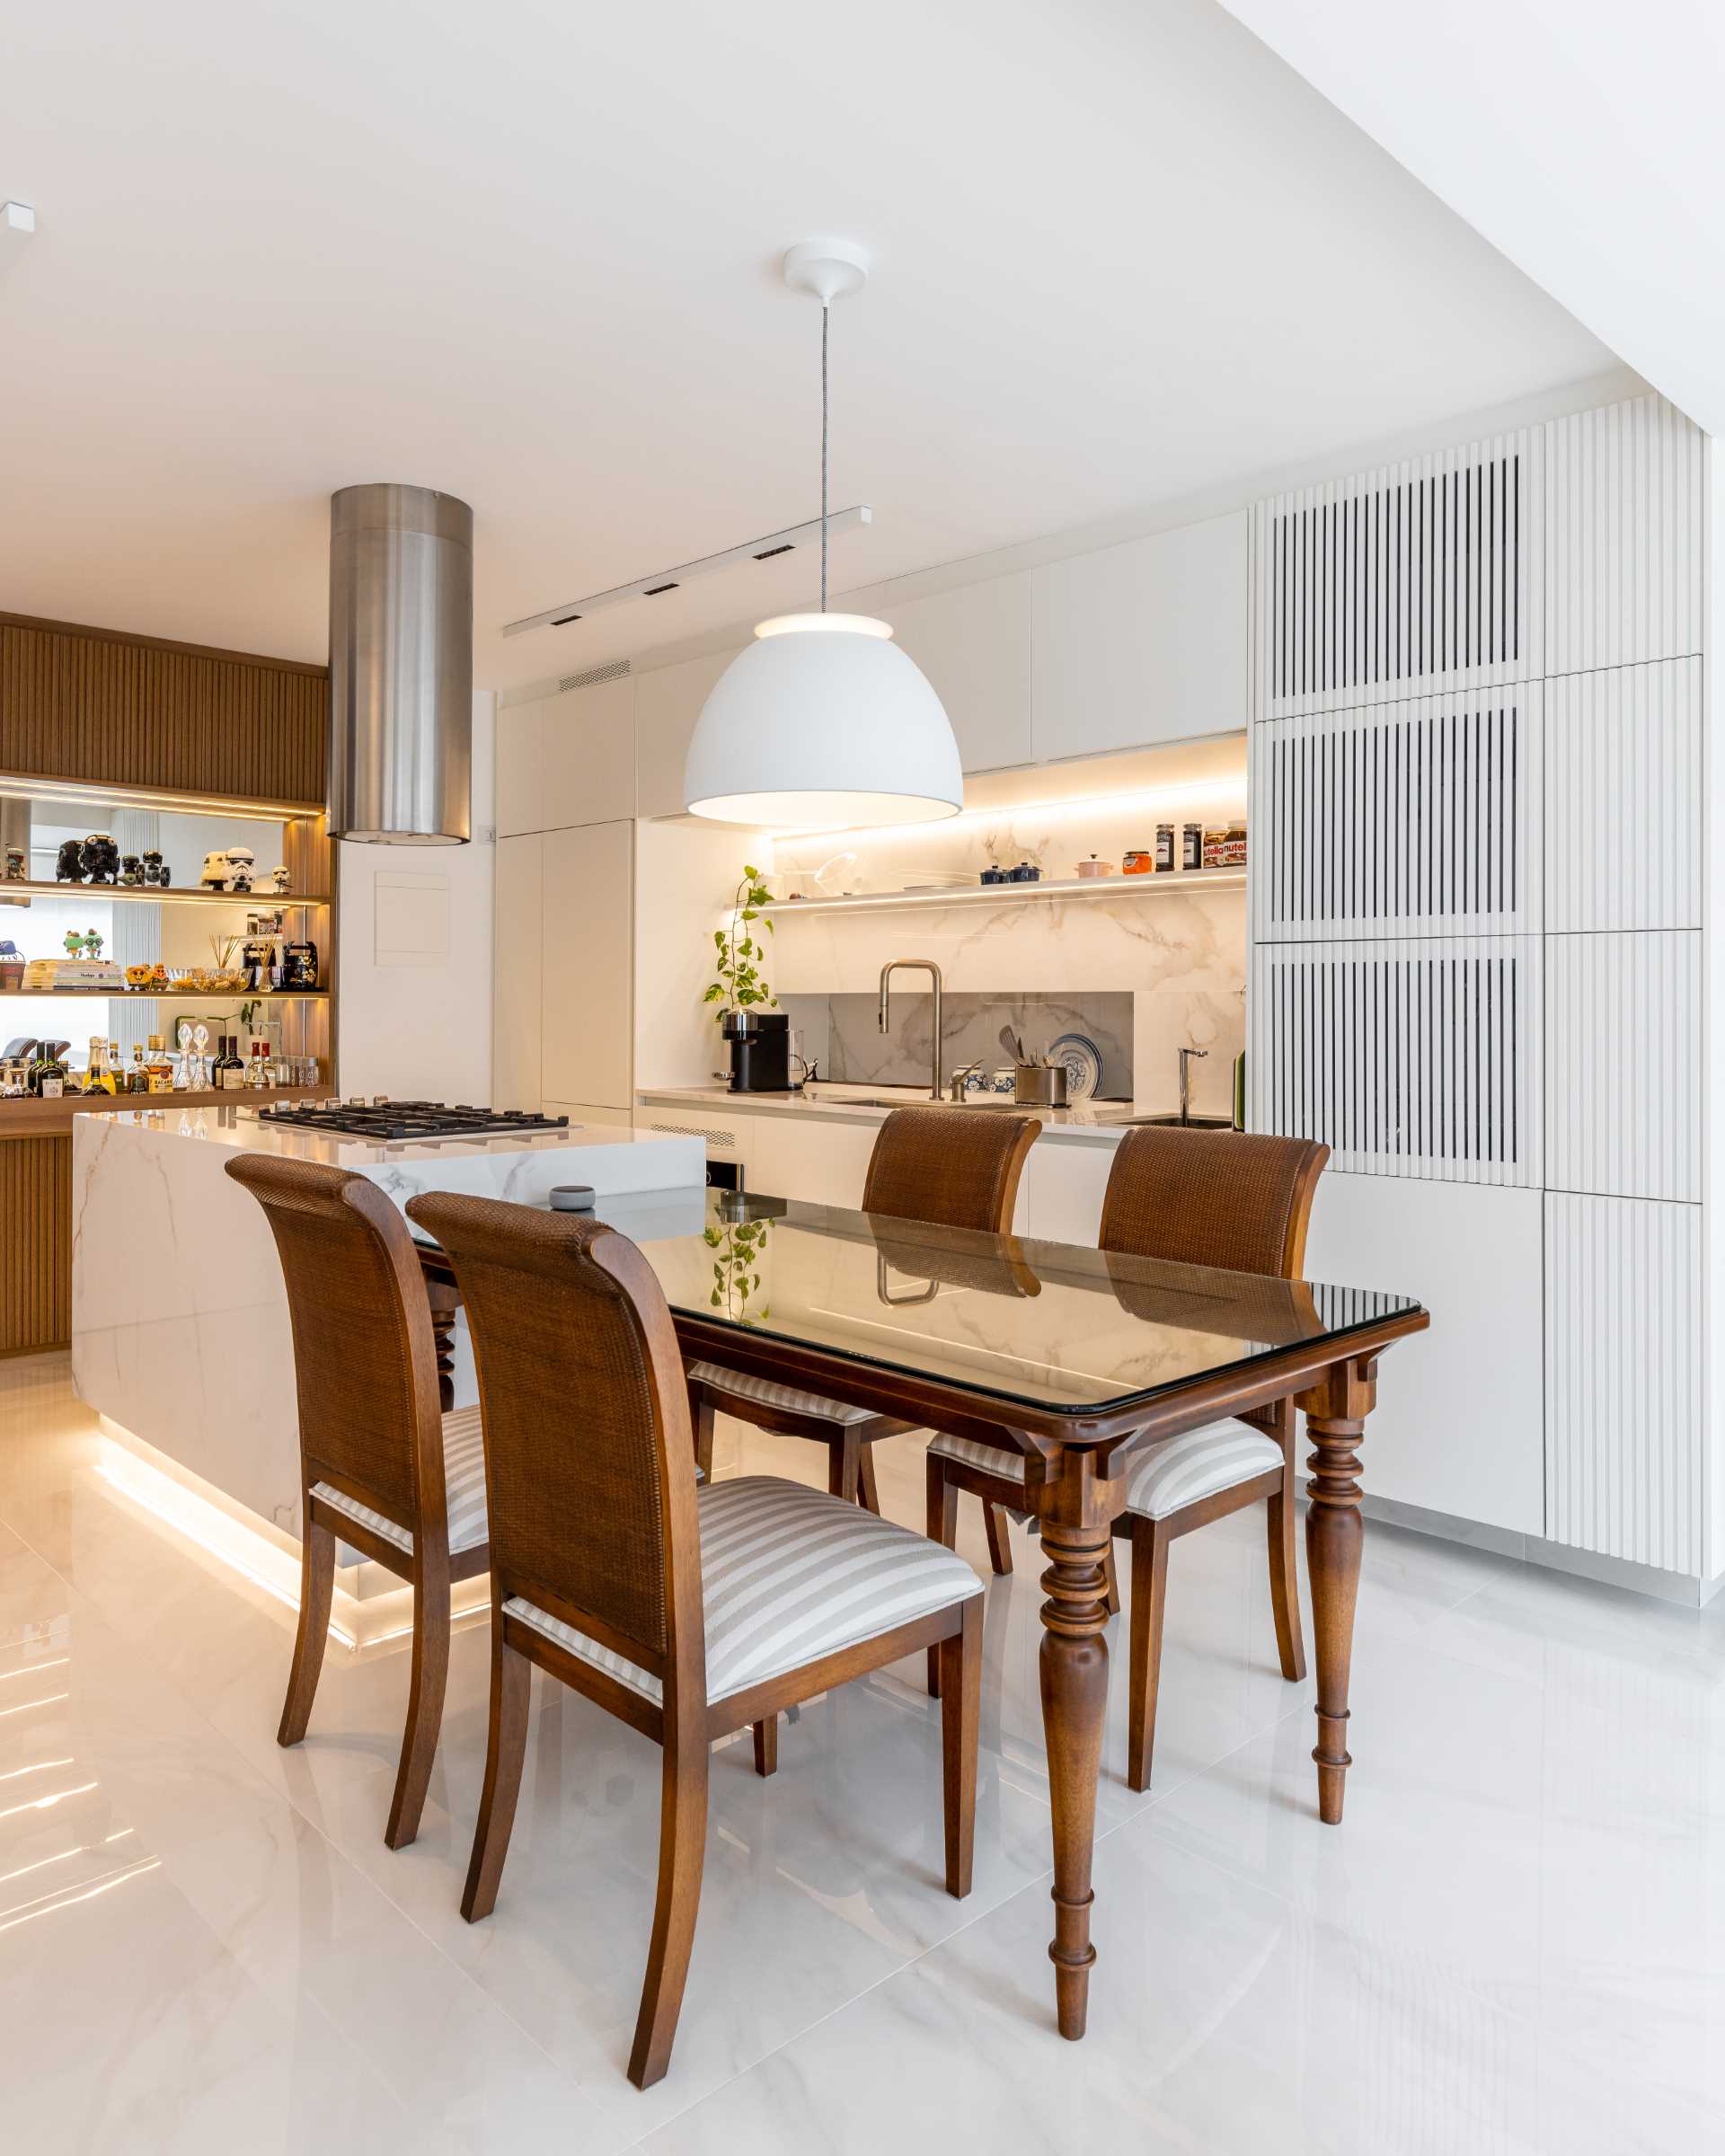 یک آشپزخانه مدرن شامل جزئیات چوبی، یک جزیره بزرگ با میز ناهارخوری مجاور و نور مخفی است.